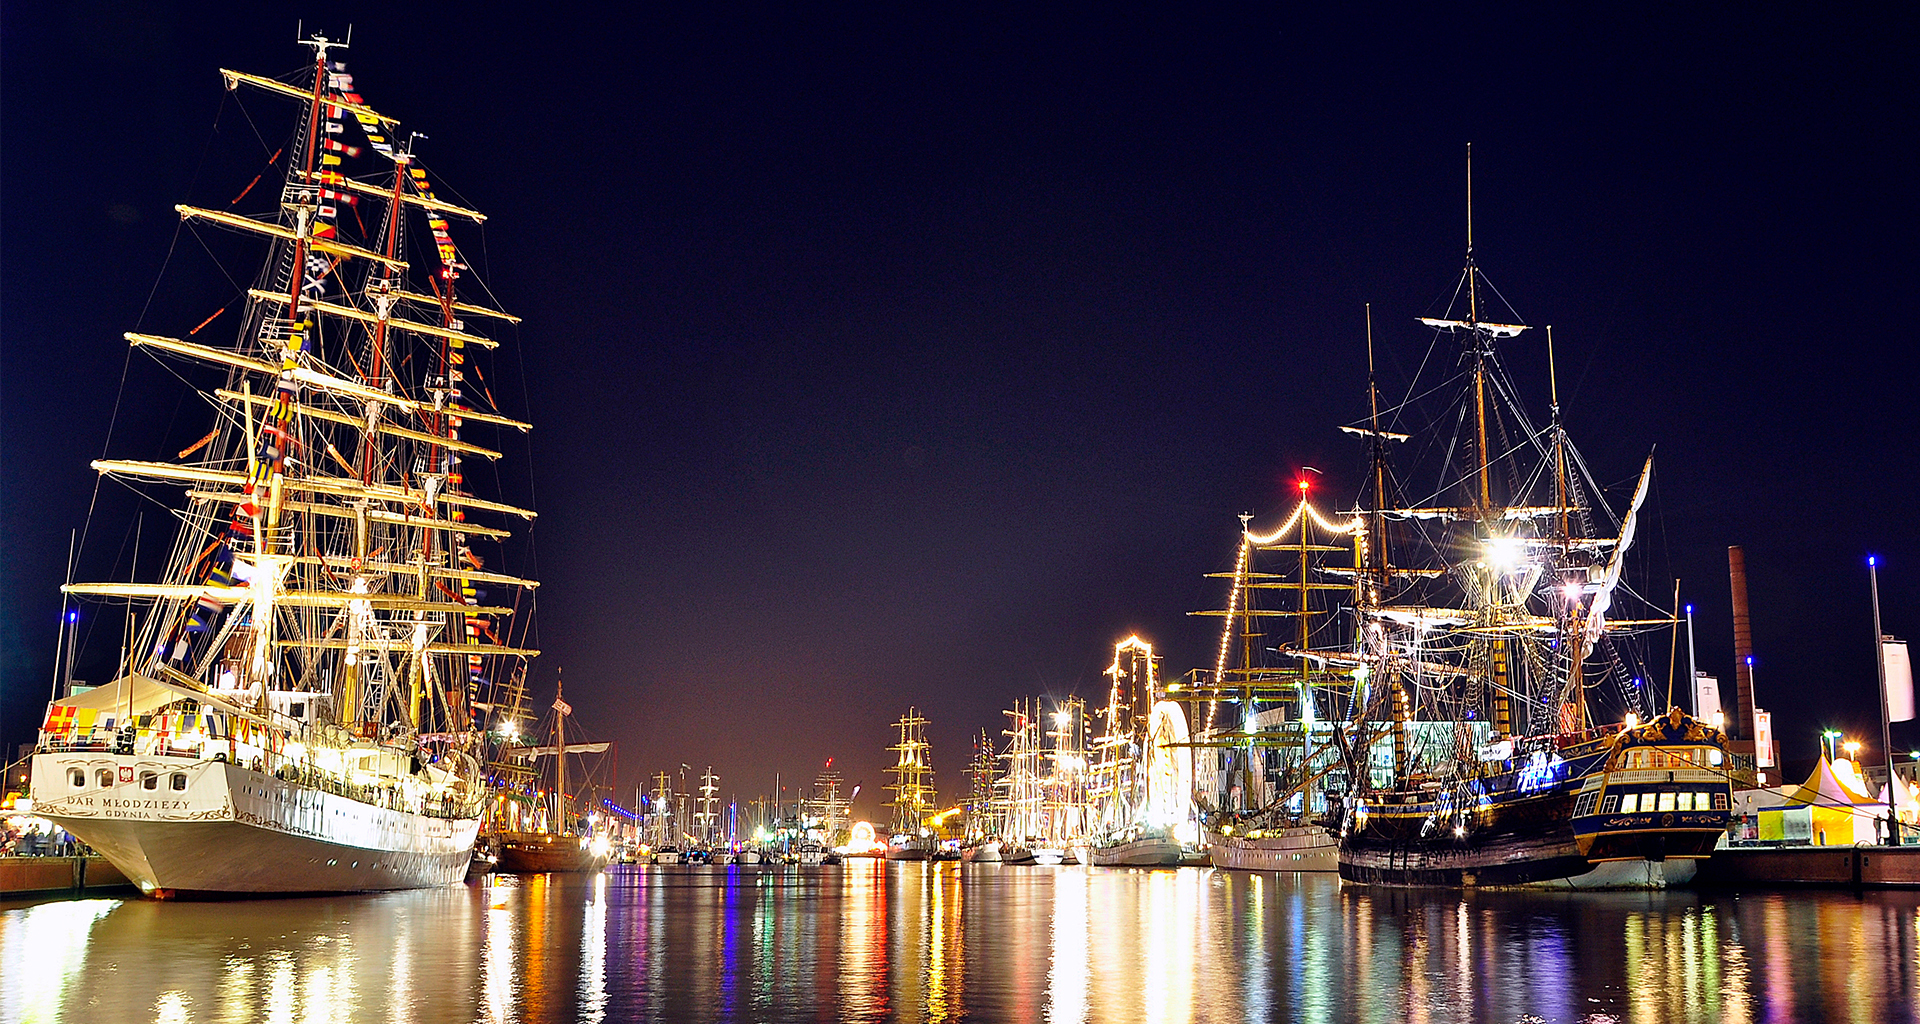 Nachtaufnahme vom Neuen Hafen mit vielen beleuchteten Segelschiffen.